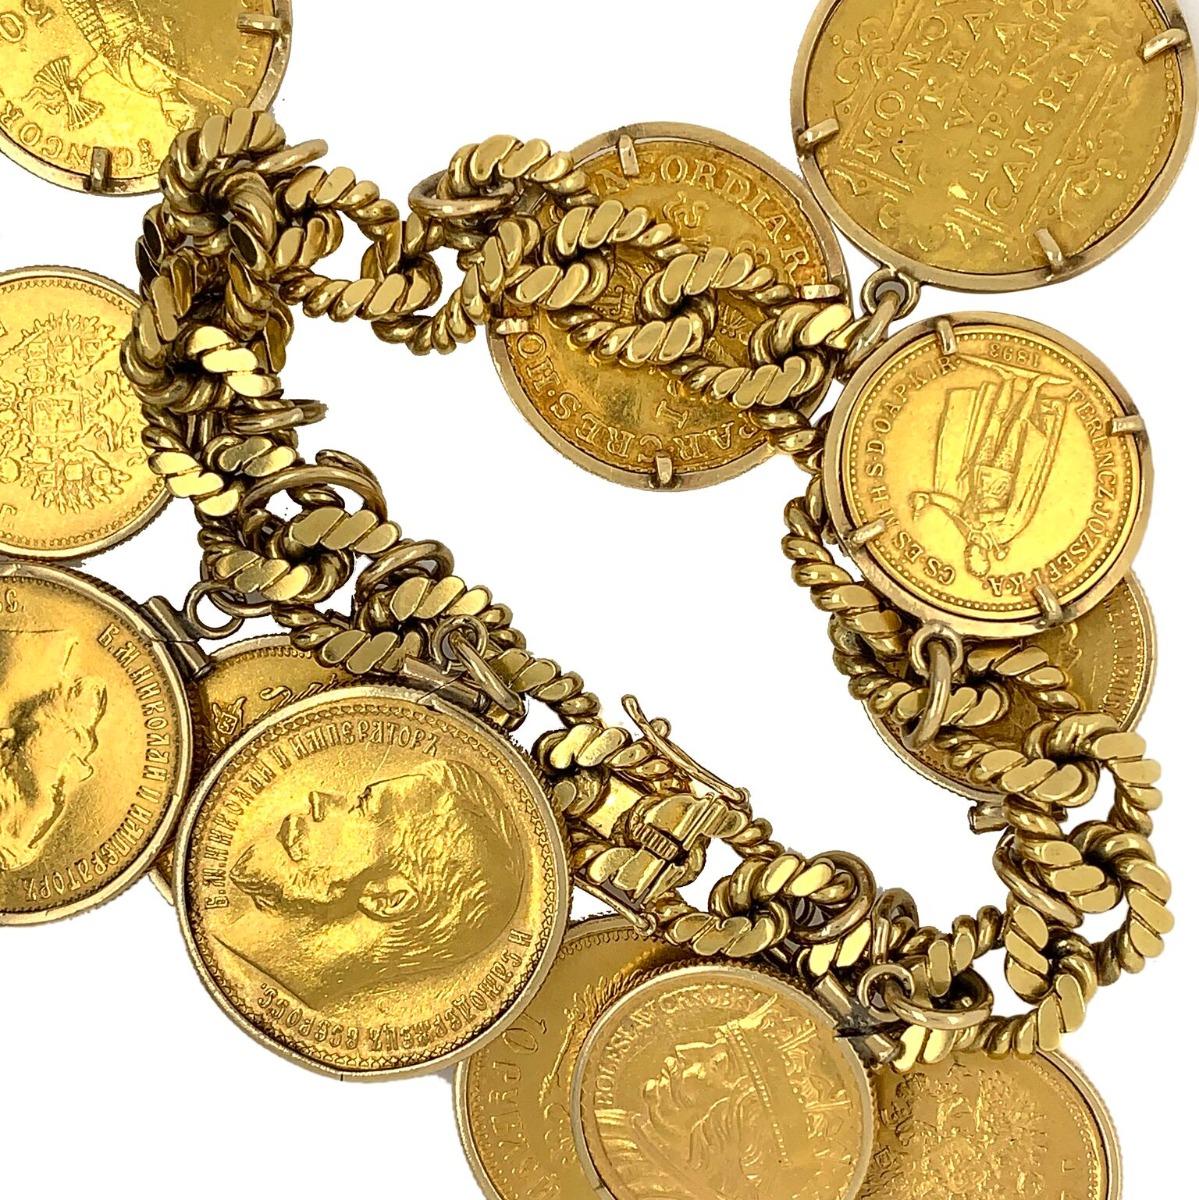 Designer: Van Cleef & Arpels
Metal: 18k Gold Bracelet, 22K Gold Coins
12 Coins Charms
Condition: Excellent
Total Item Weight: 129 g